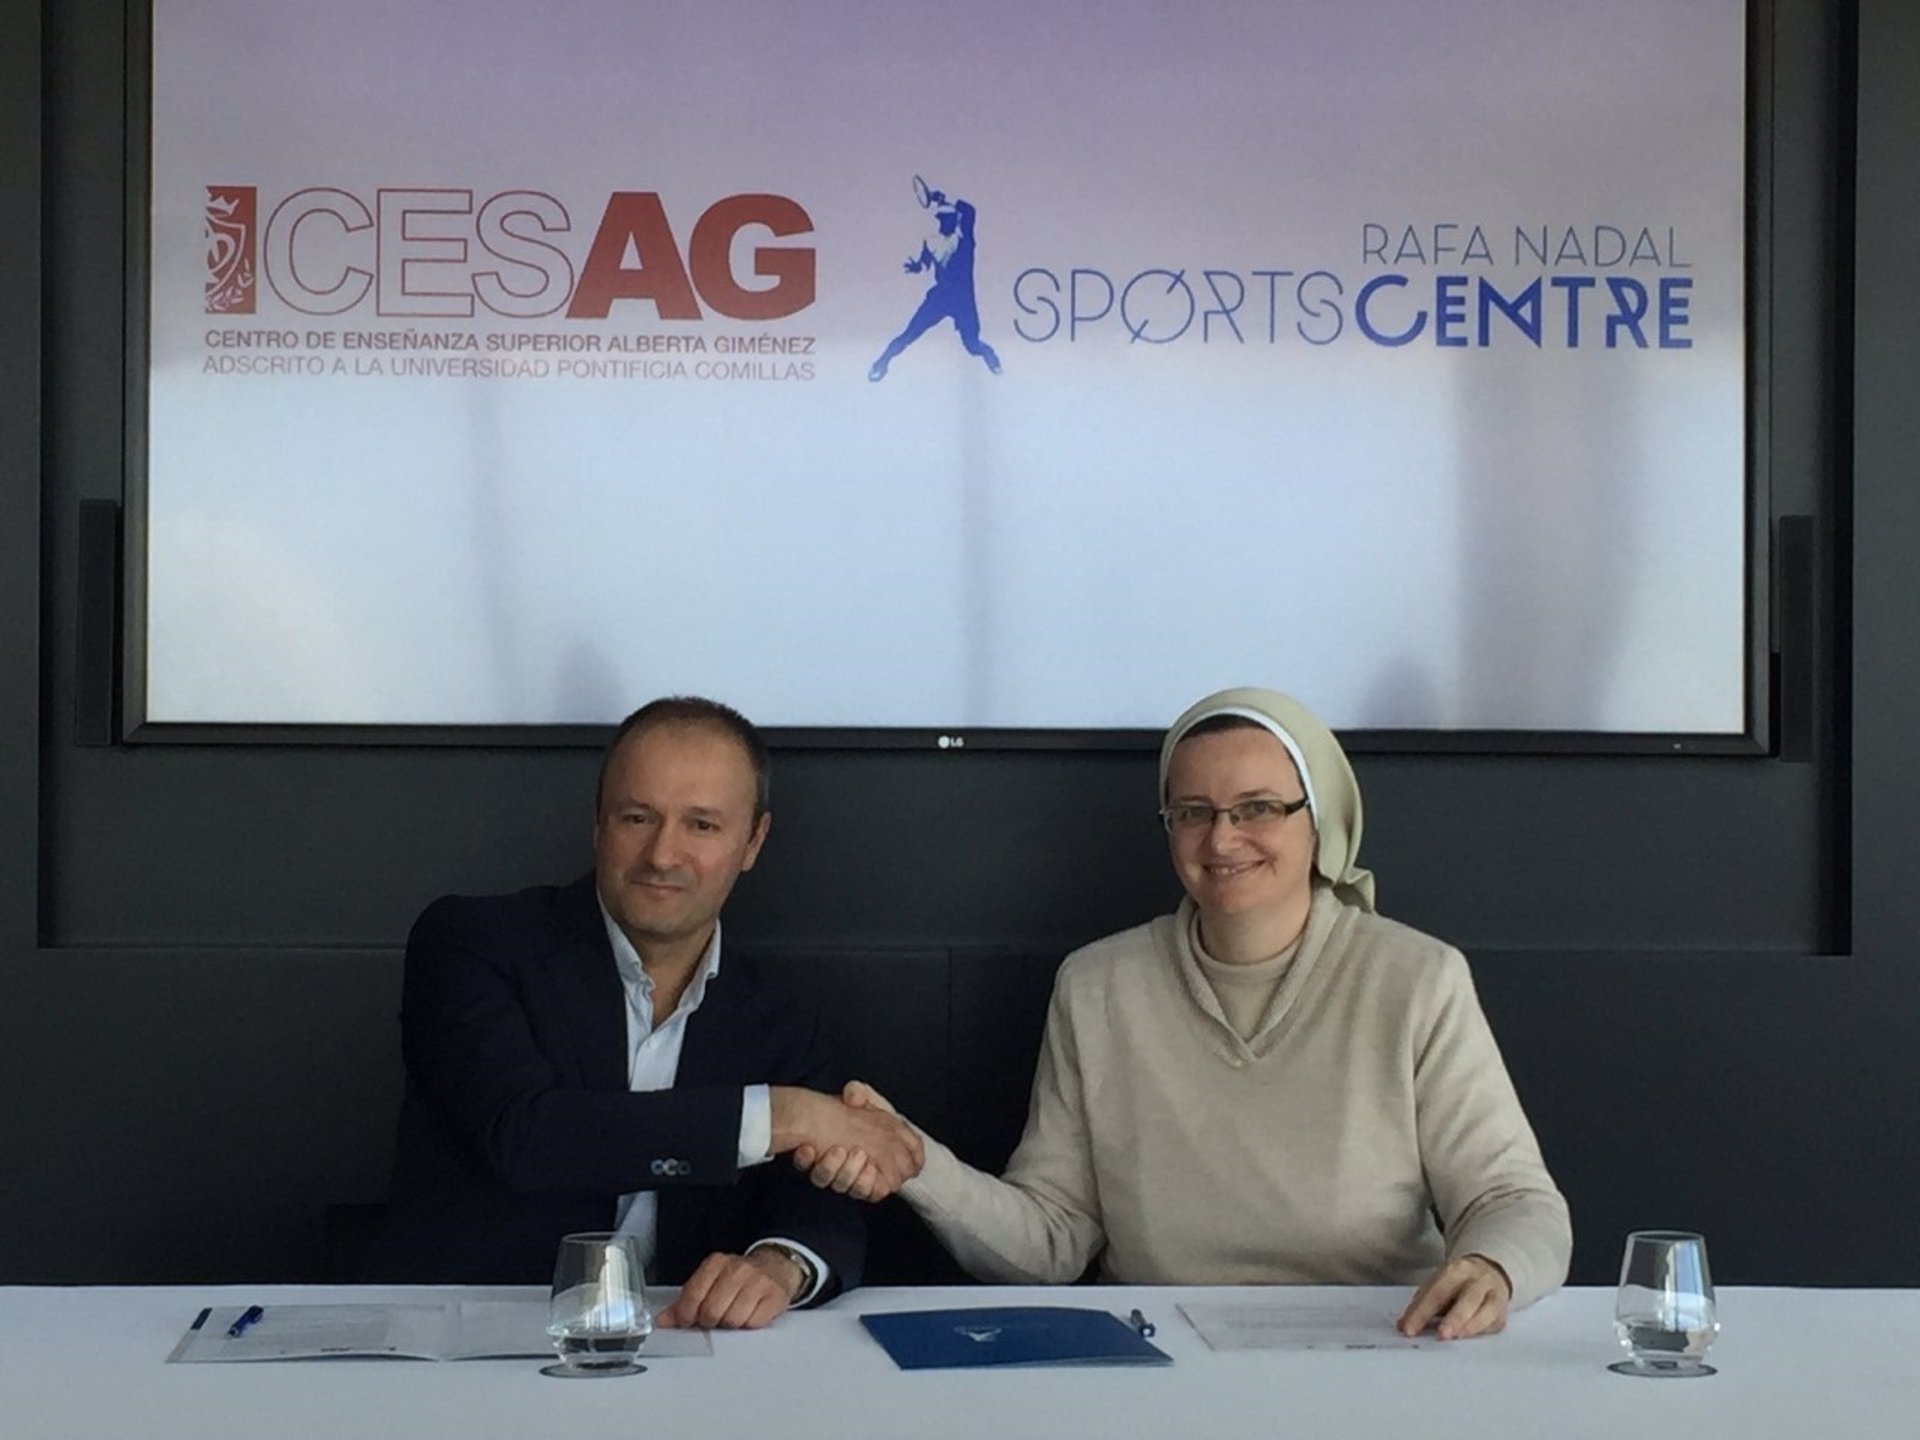 Cesag firma un convenio de prácticas con el Rafa Nadal Sports Centre